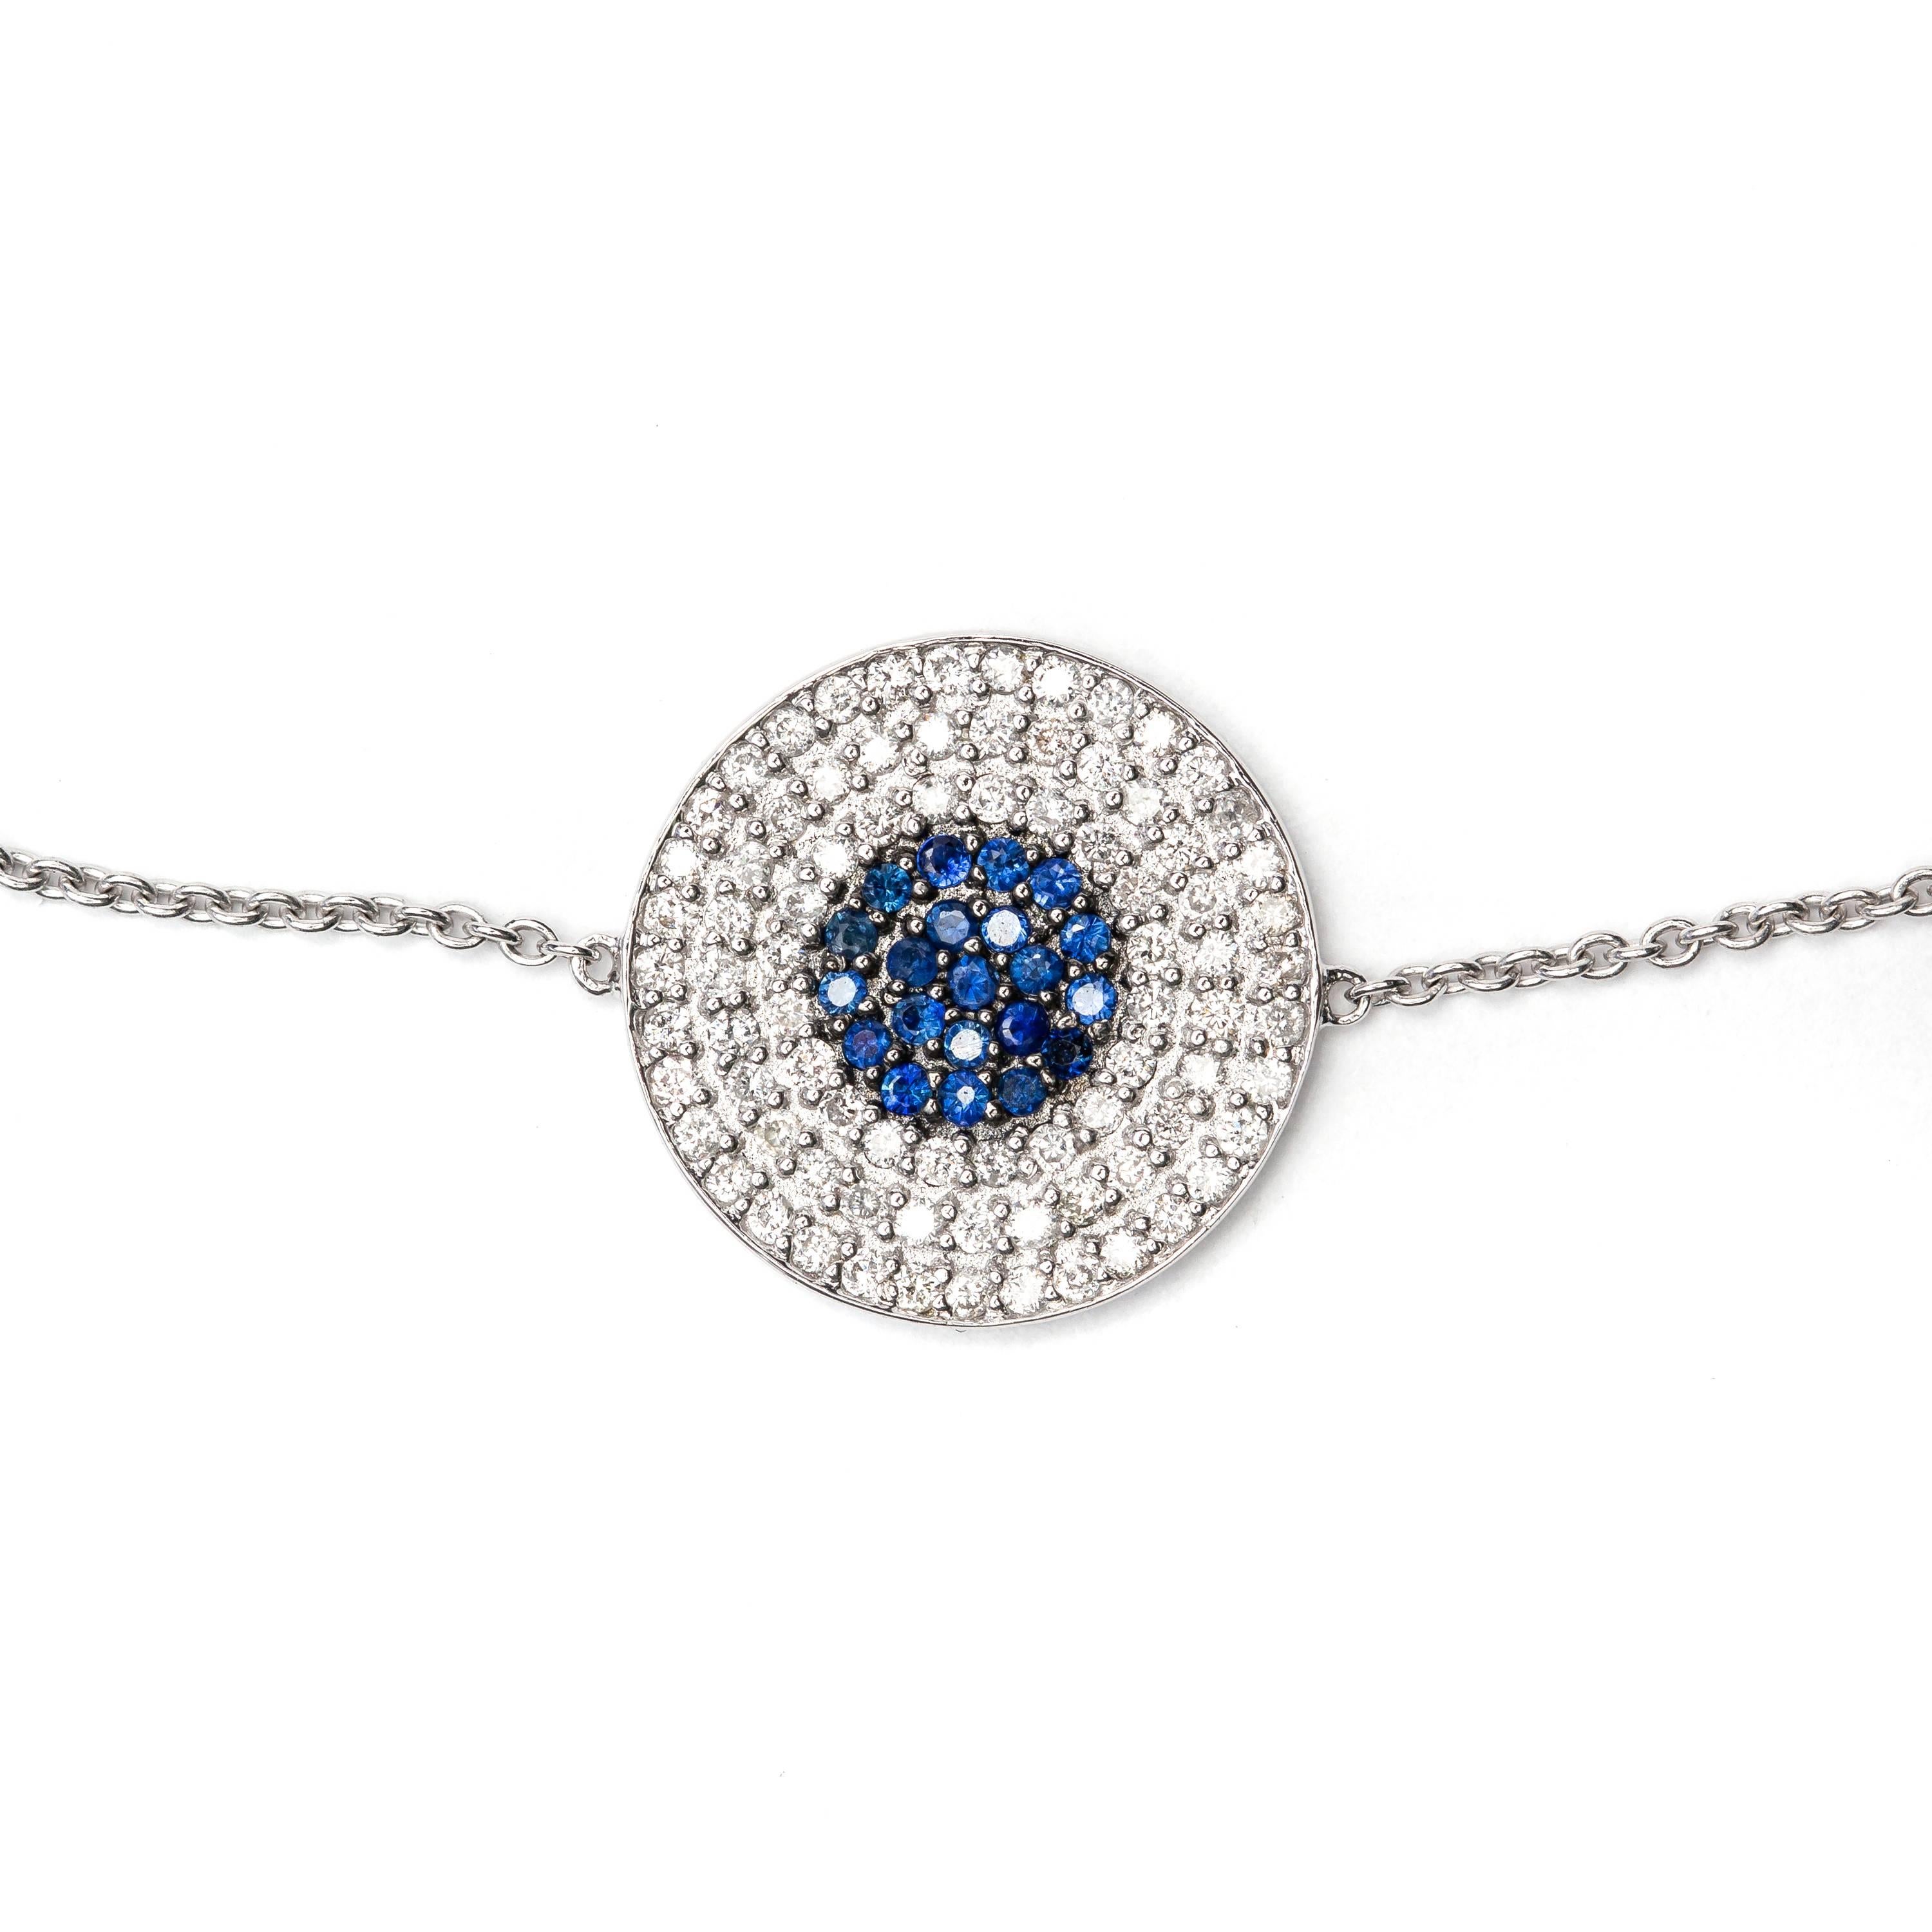 Ce luxueux bracelet en diamants brillants ronds H-SI1 de 0,25ct brille de mille feux, avec un saphir pavé bleu de 0,25ct au centre. Ornez votre poignet avec cette élégante pièce de joaillerie en or blanc 18 carats.